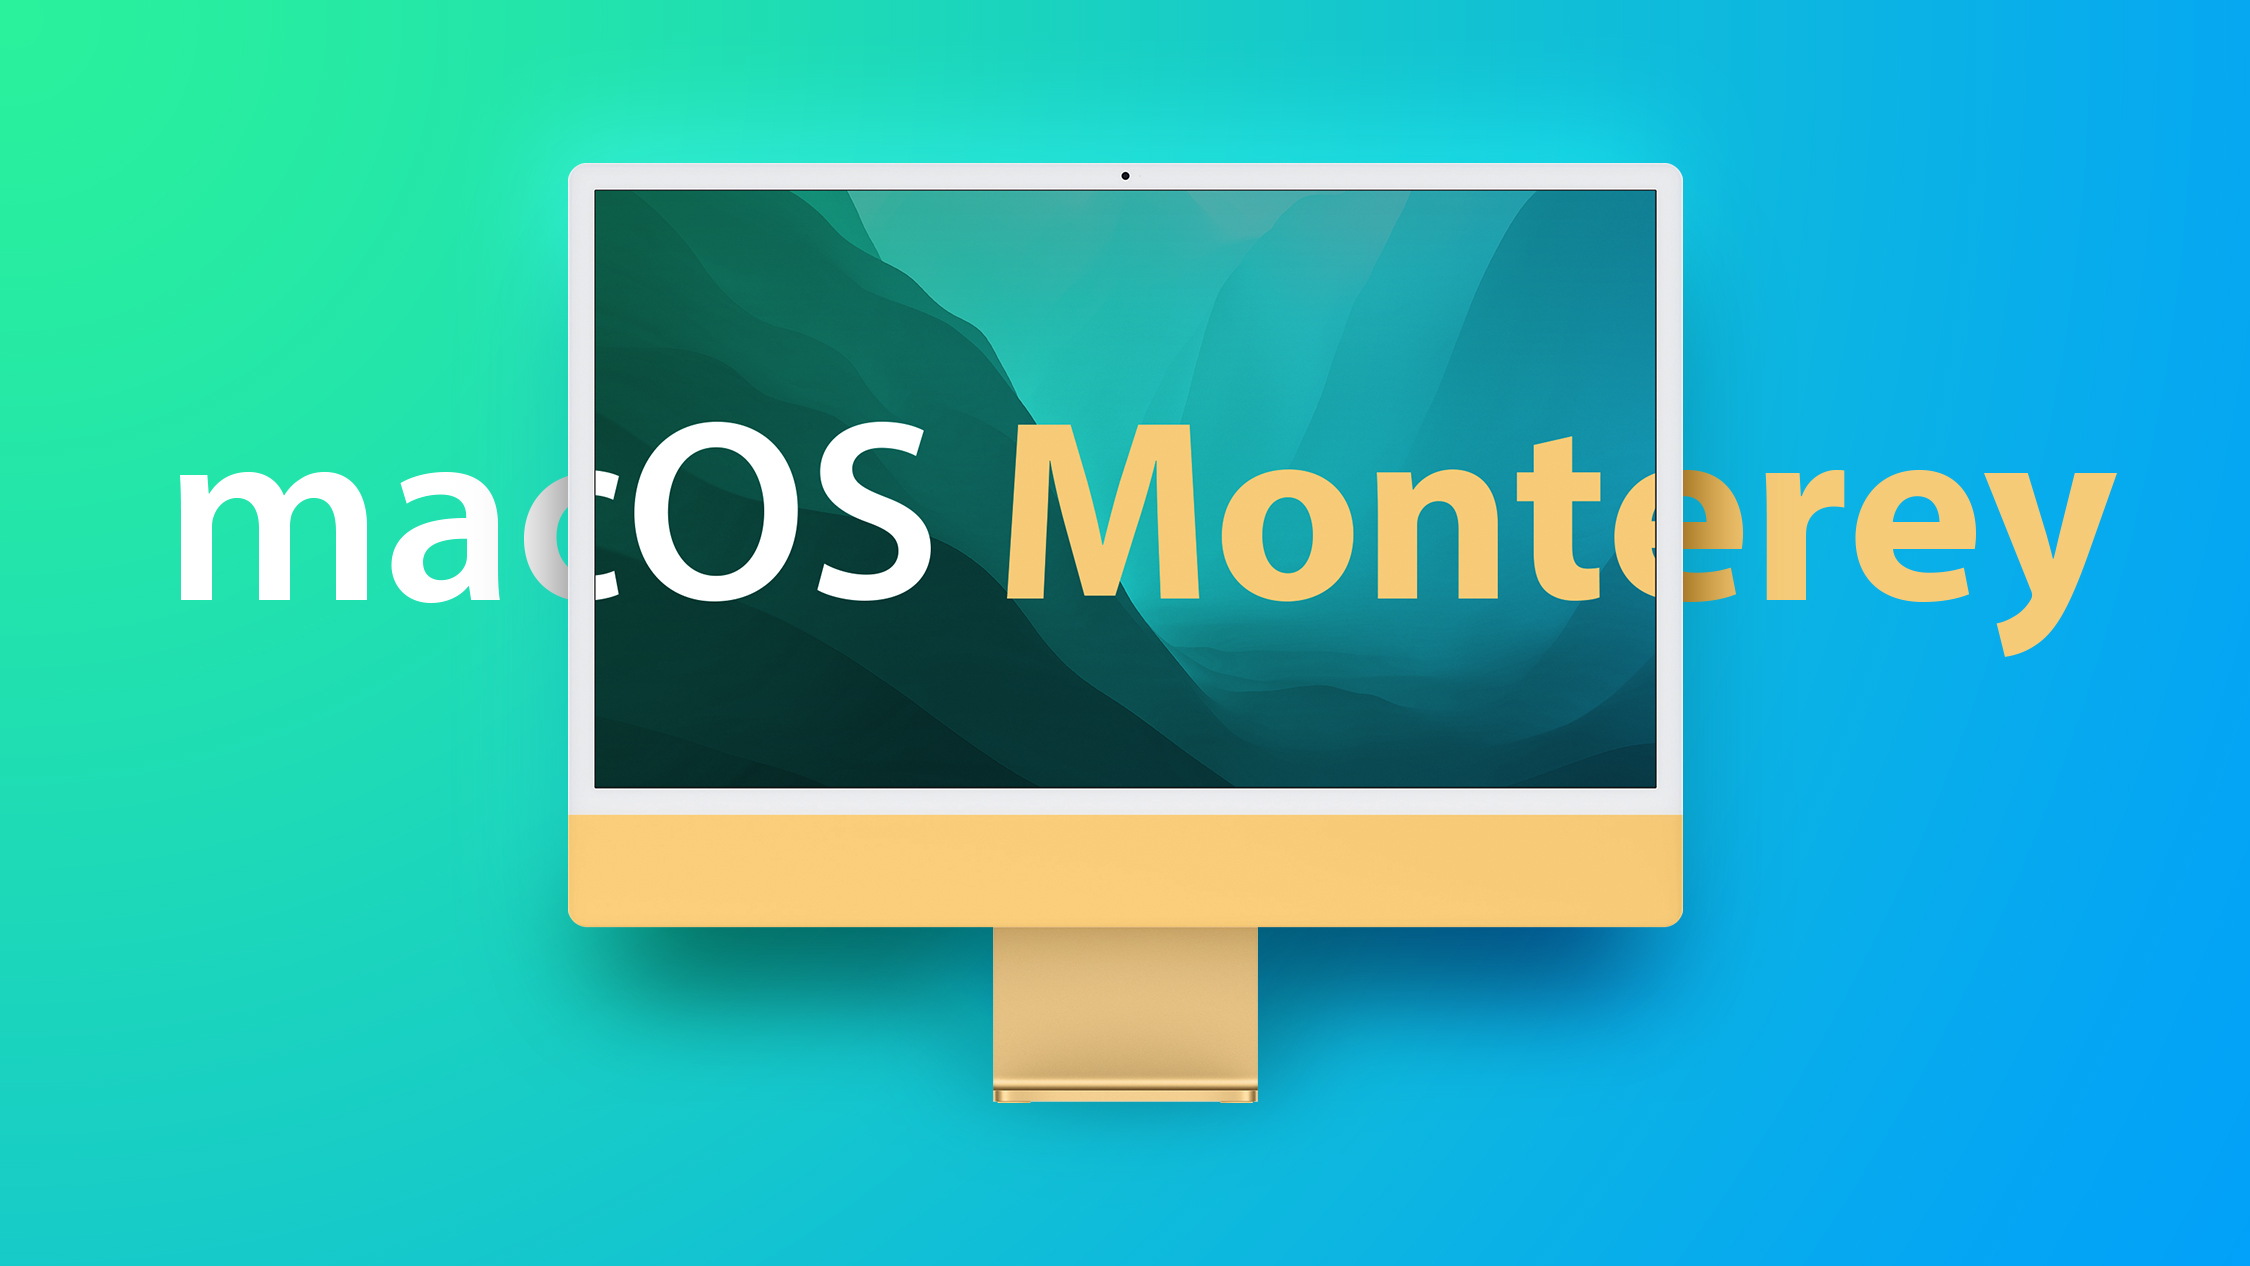 macOS Monterey 2